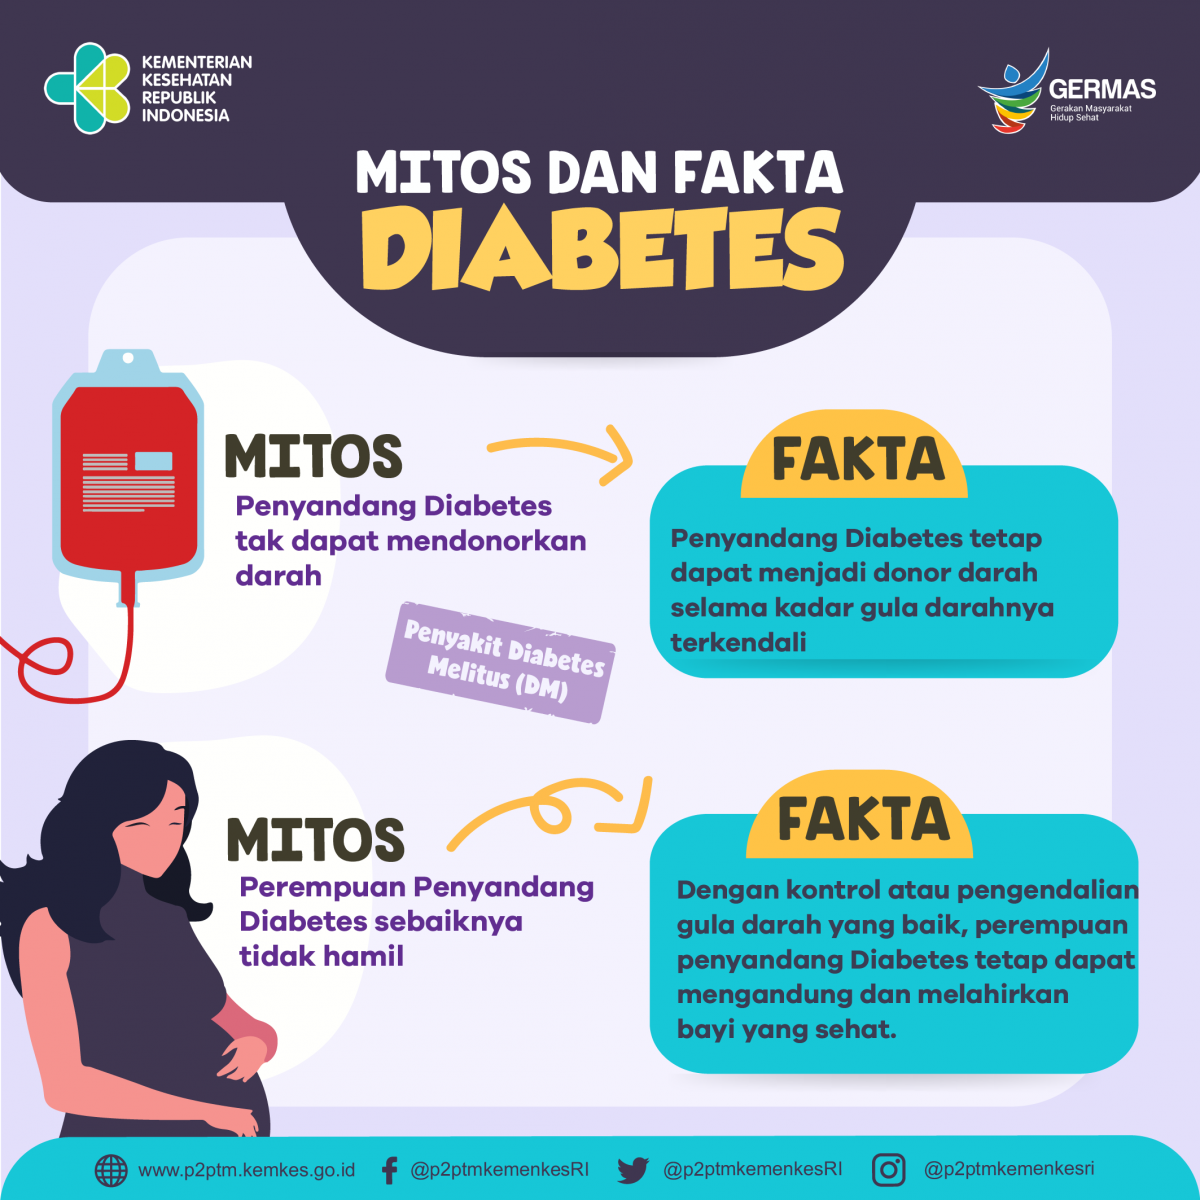 Sobat Sehat, yuk simak mitos fakta mengenai Diabetes Berikut ini